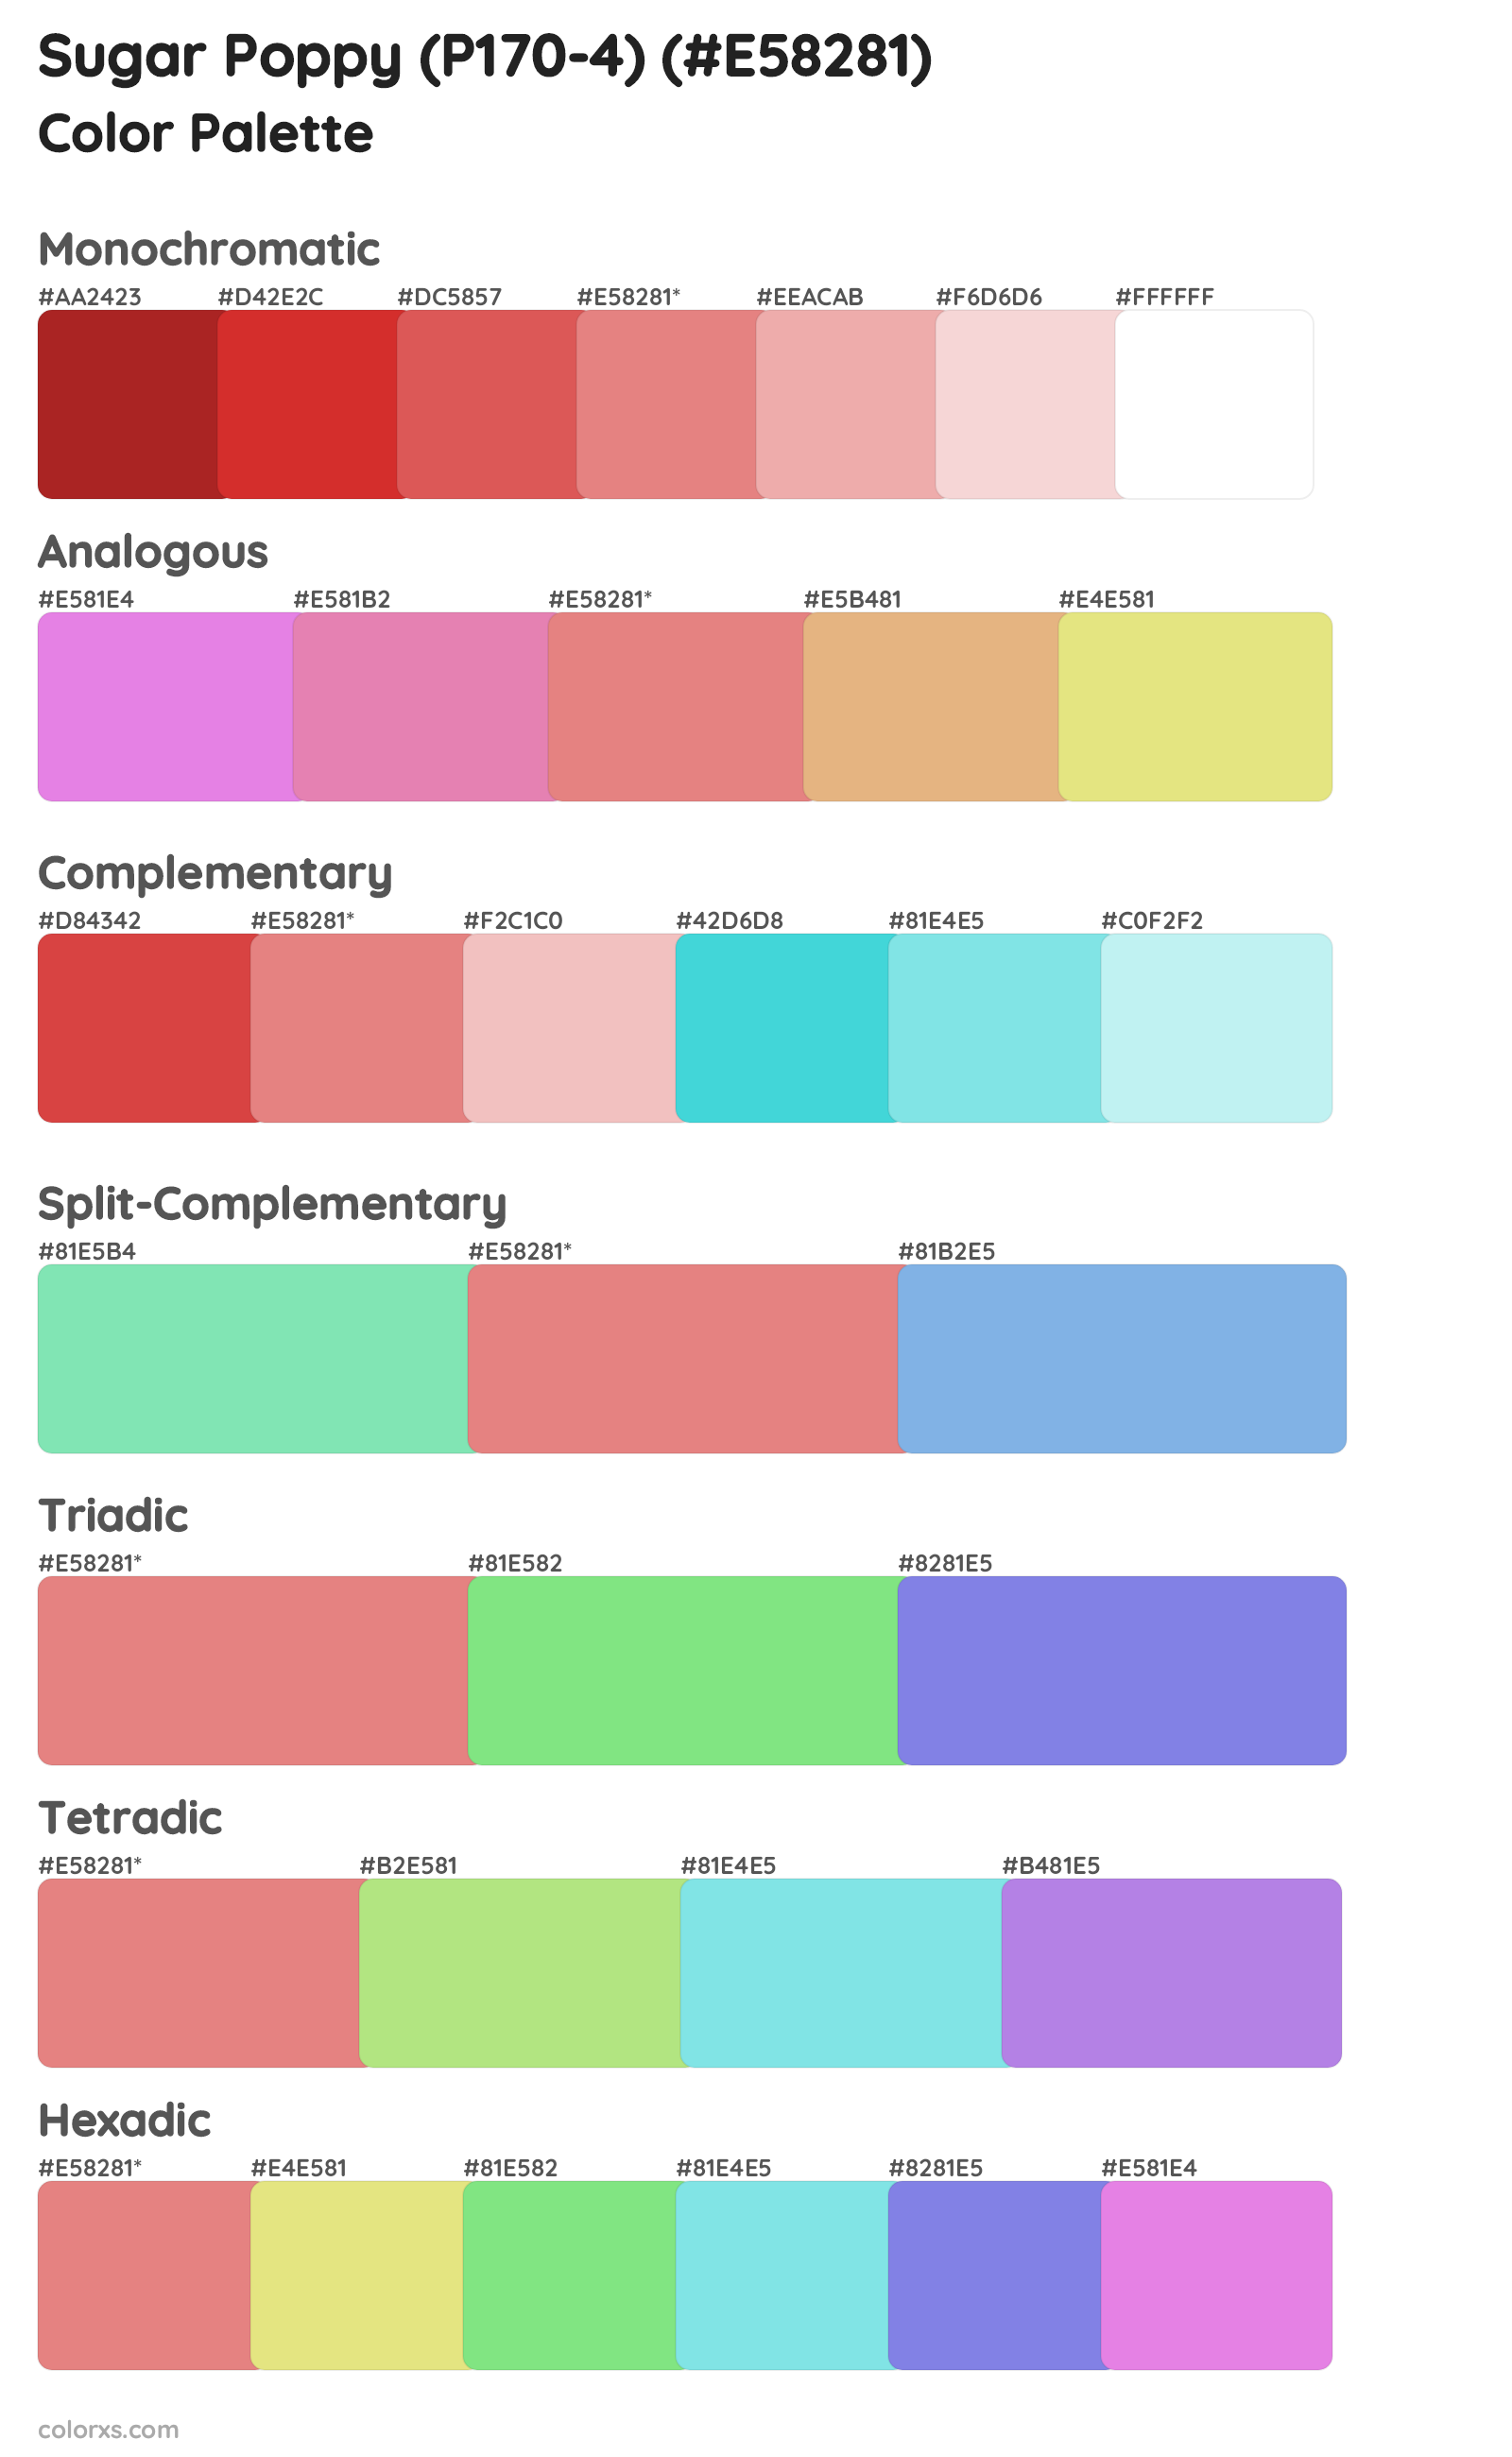 Sugar Poppy (P170-4) Color Scheme Palettes